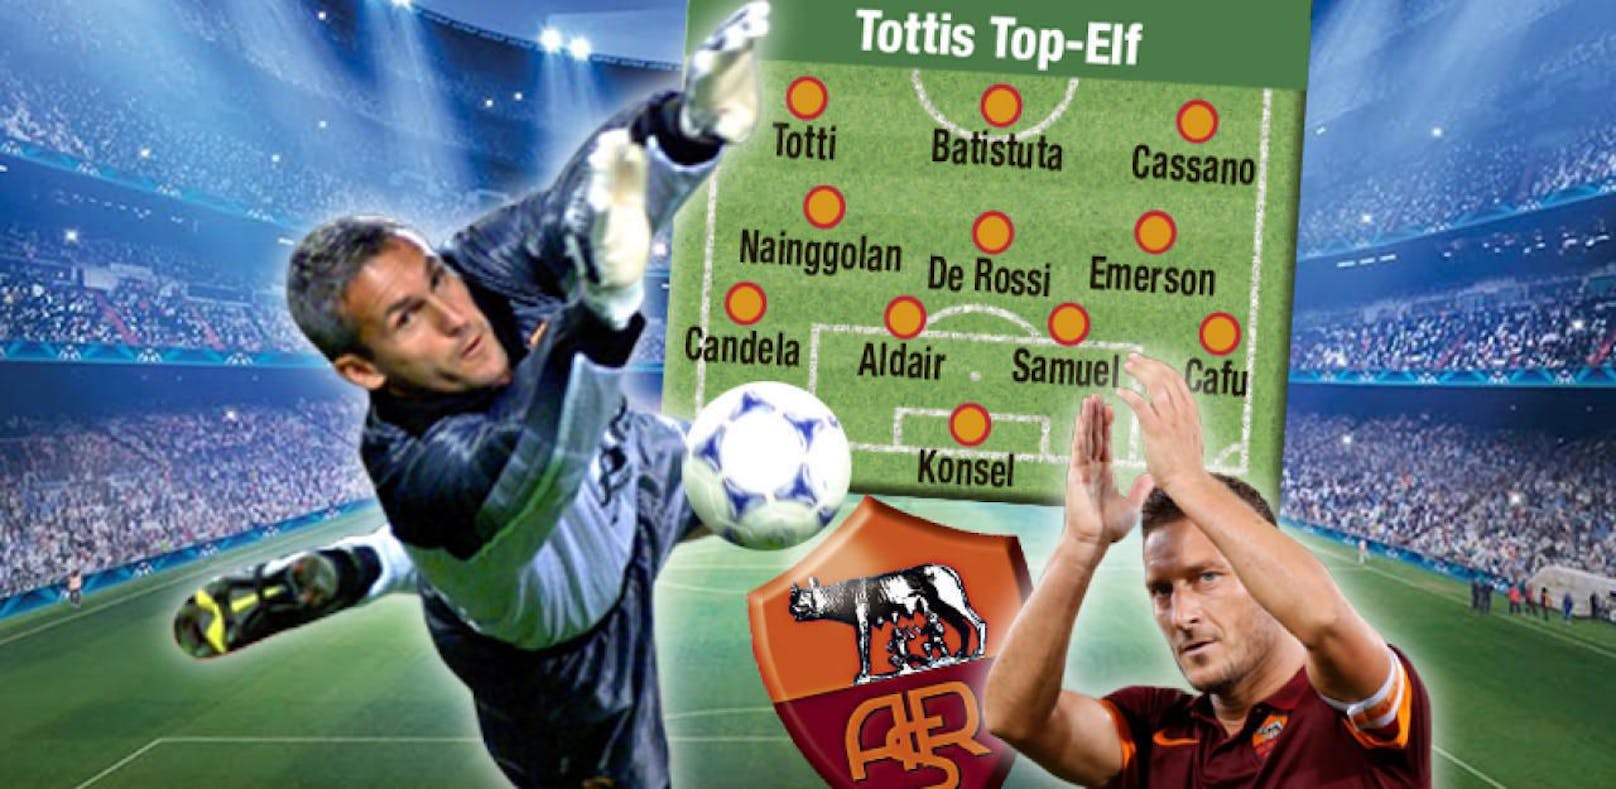 Konsel in Tottis Top-Elf: "Das ist eine Riesenehre"